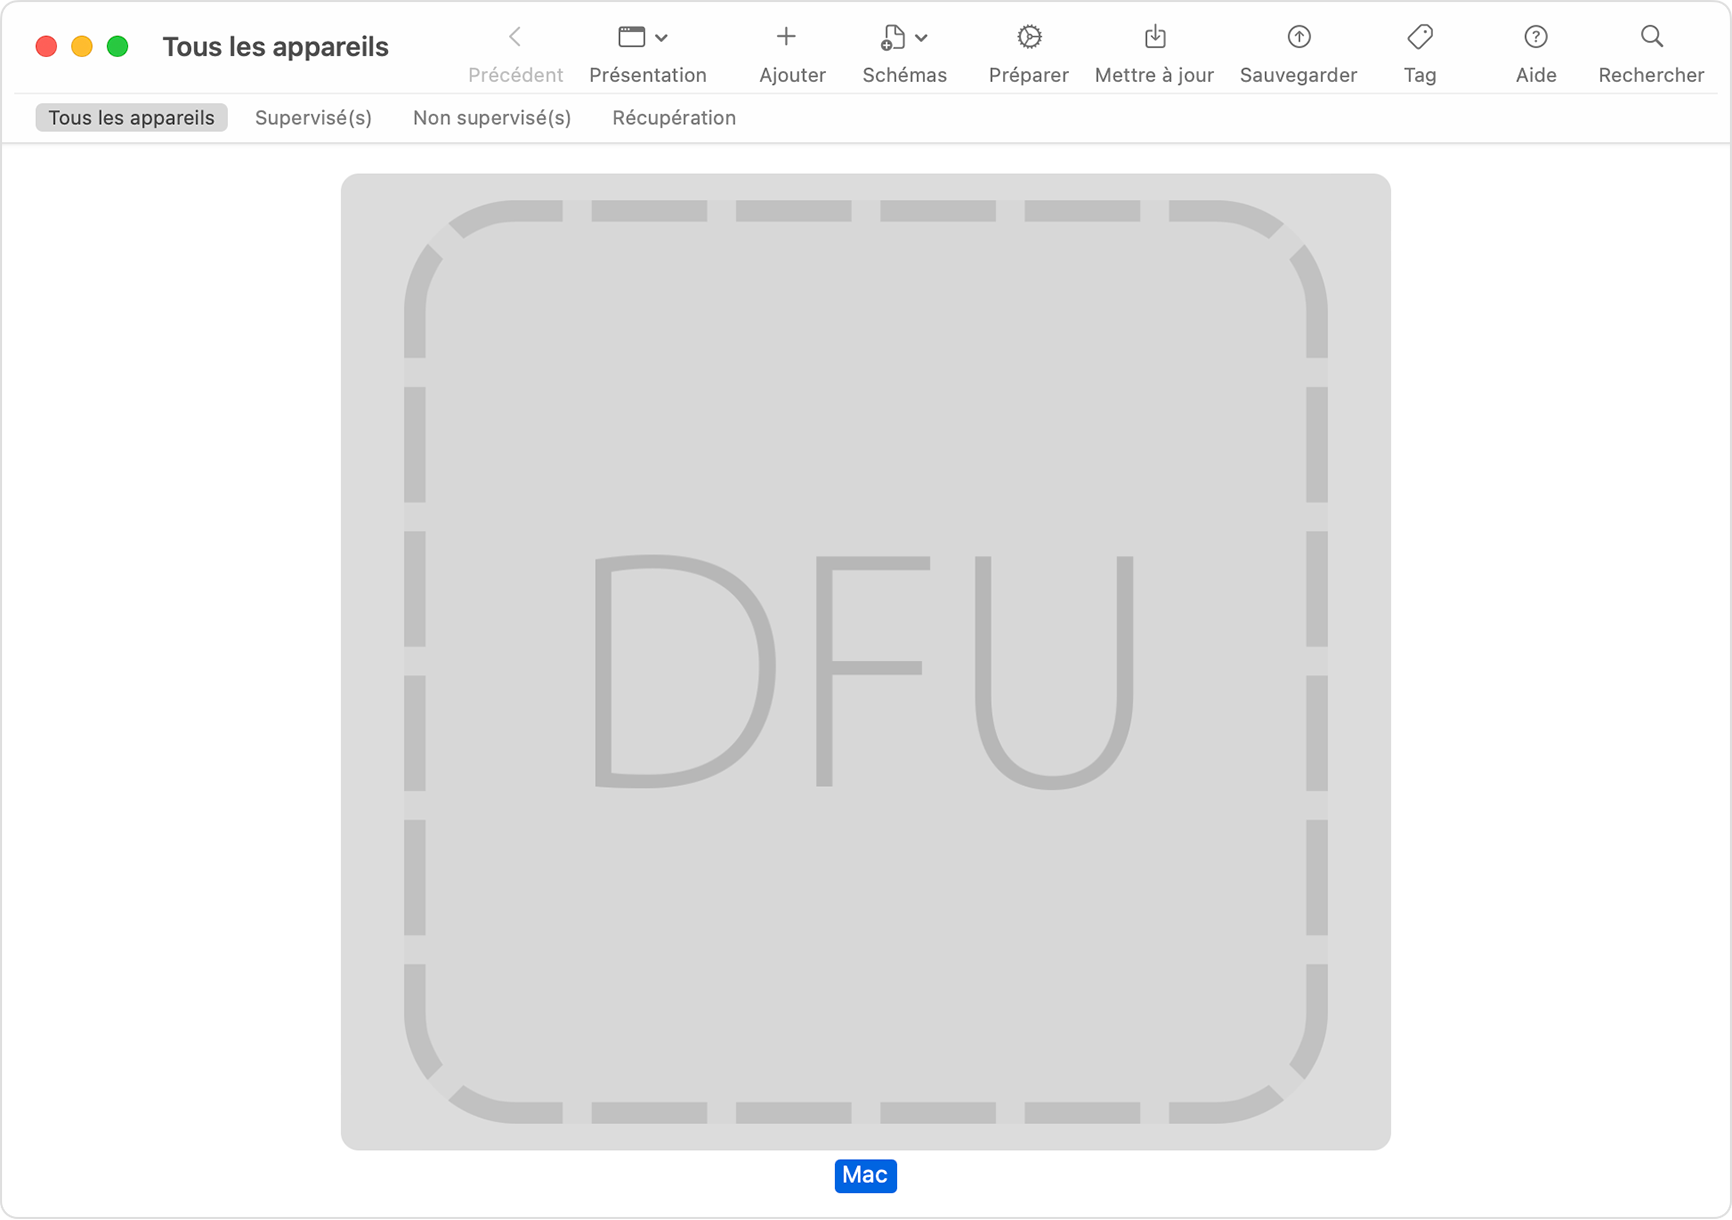 Fenêtre Apple Configurator affichant « DFU » sélectionné pour le Mac concerné